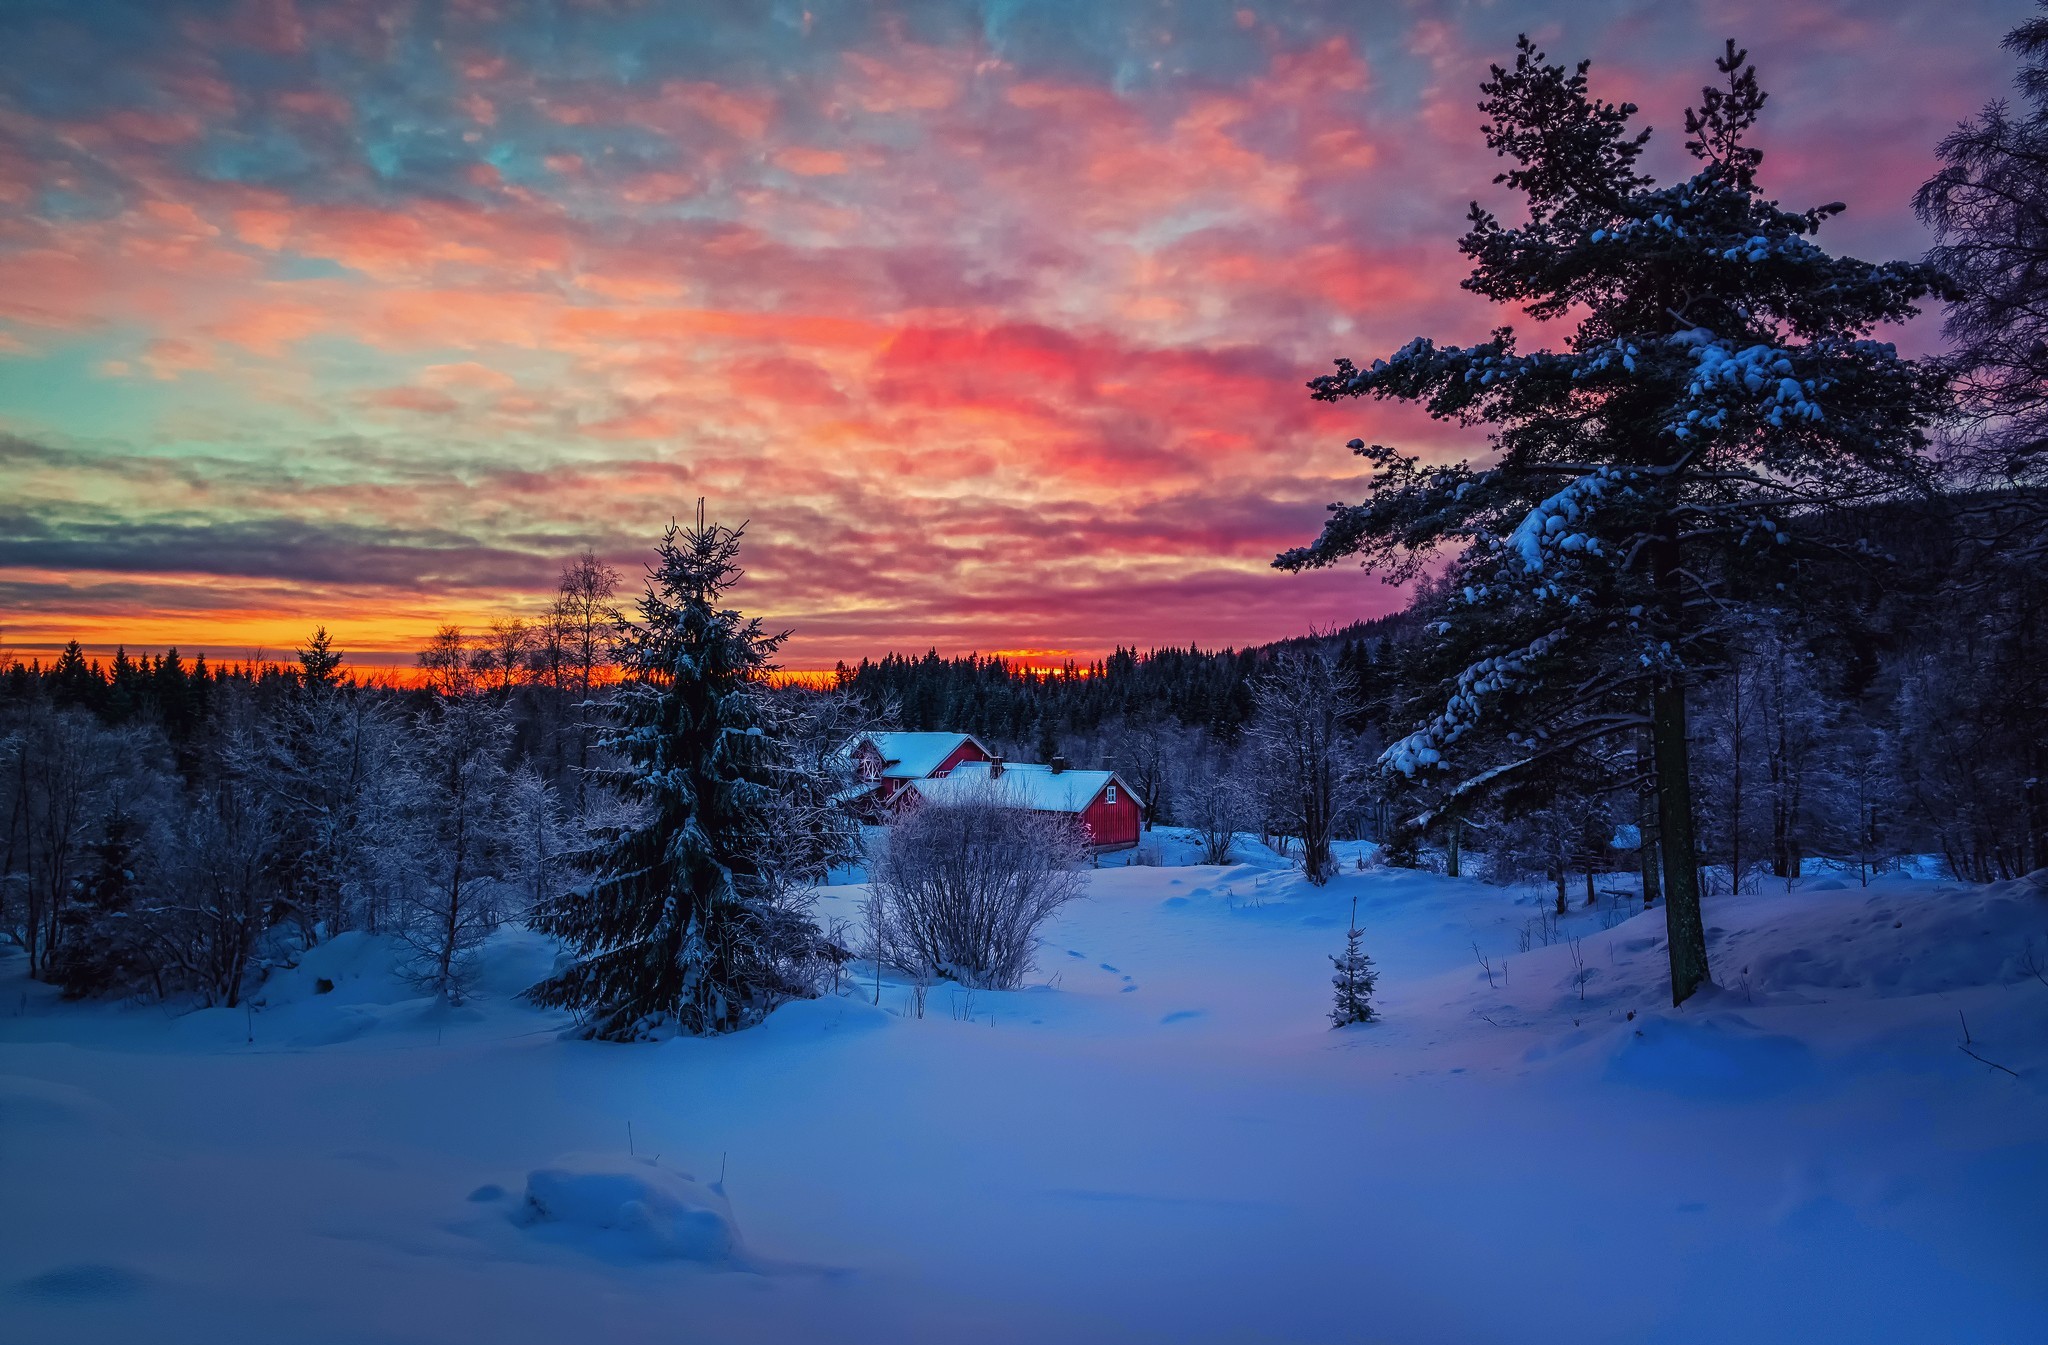 Скачать картинку Зима, Закат, Снег, Лес, Фотографии в телефон бесплатно.